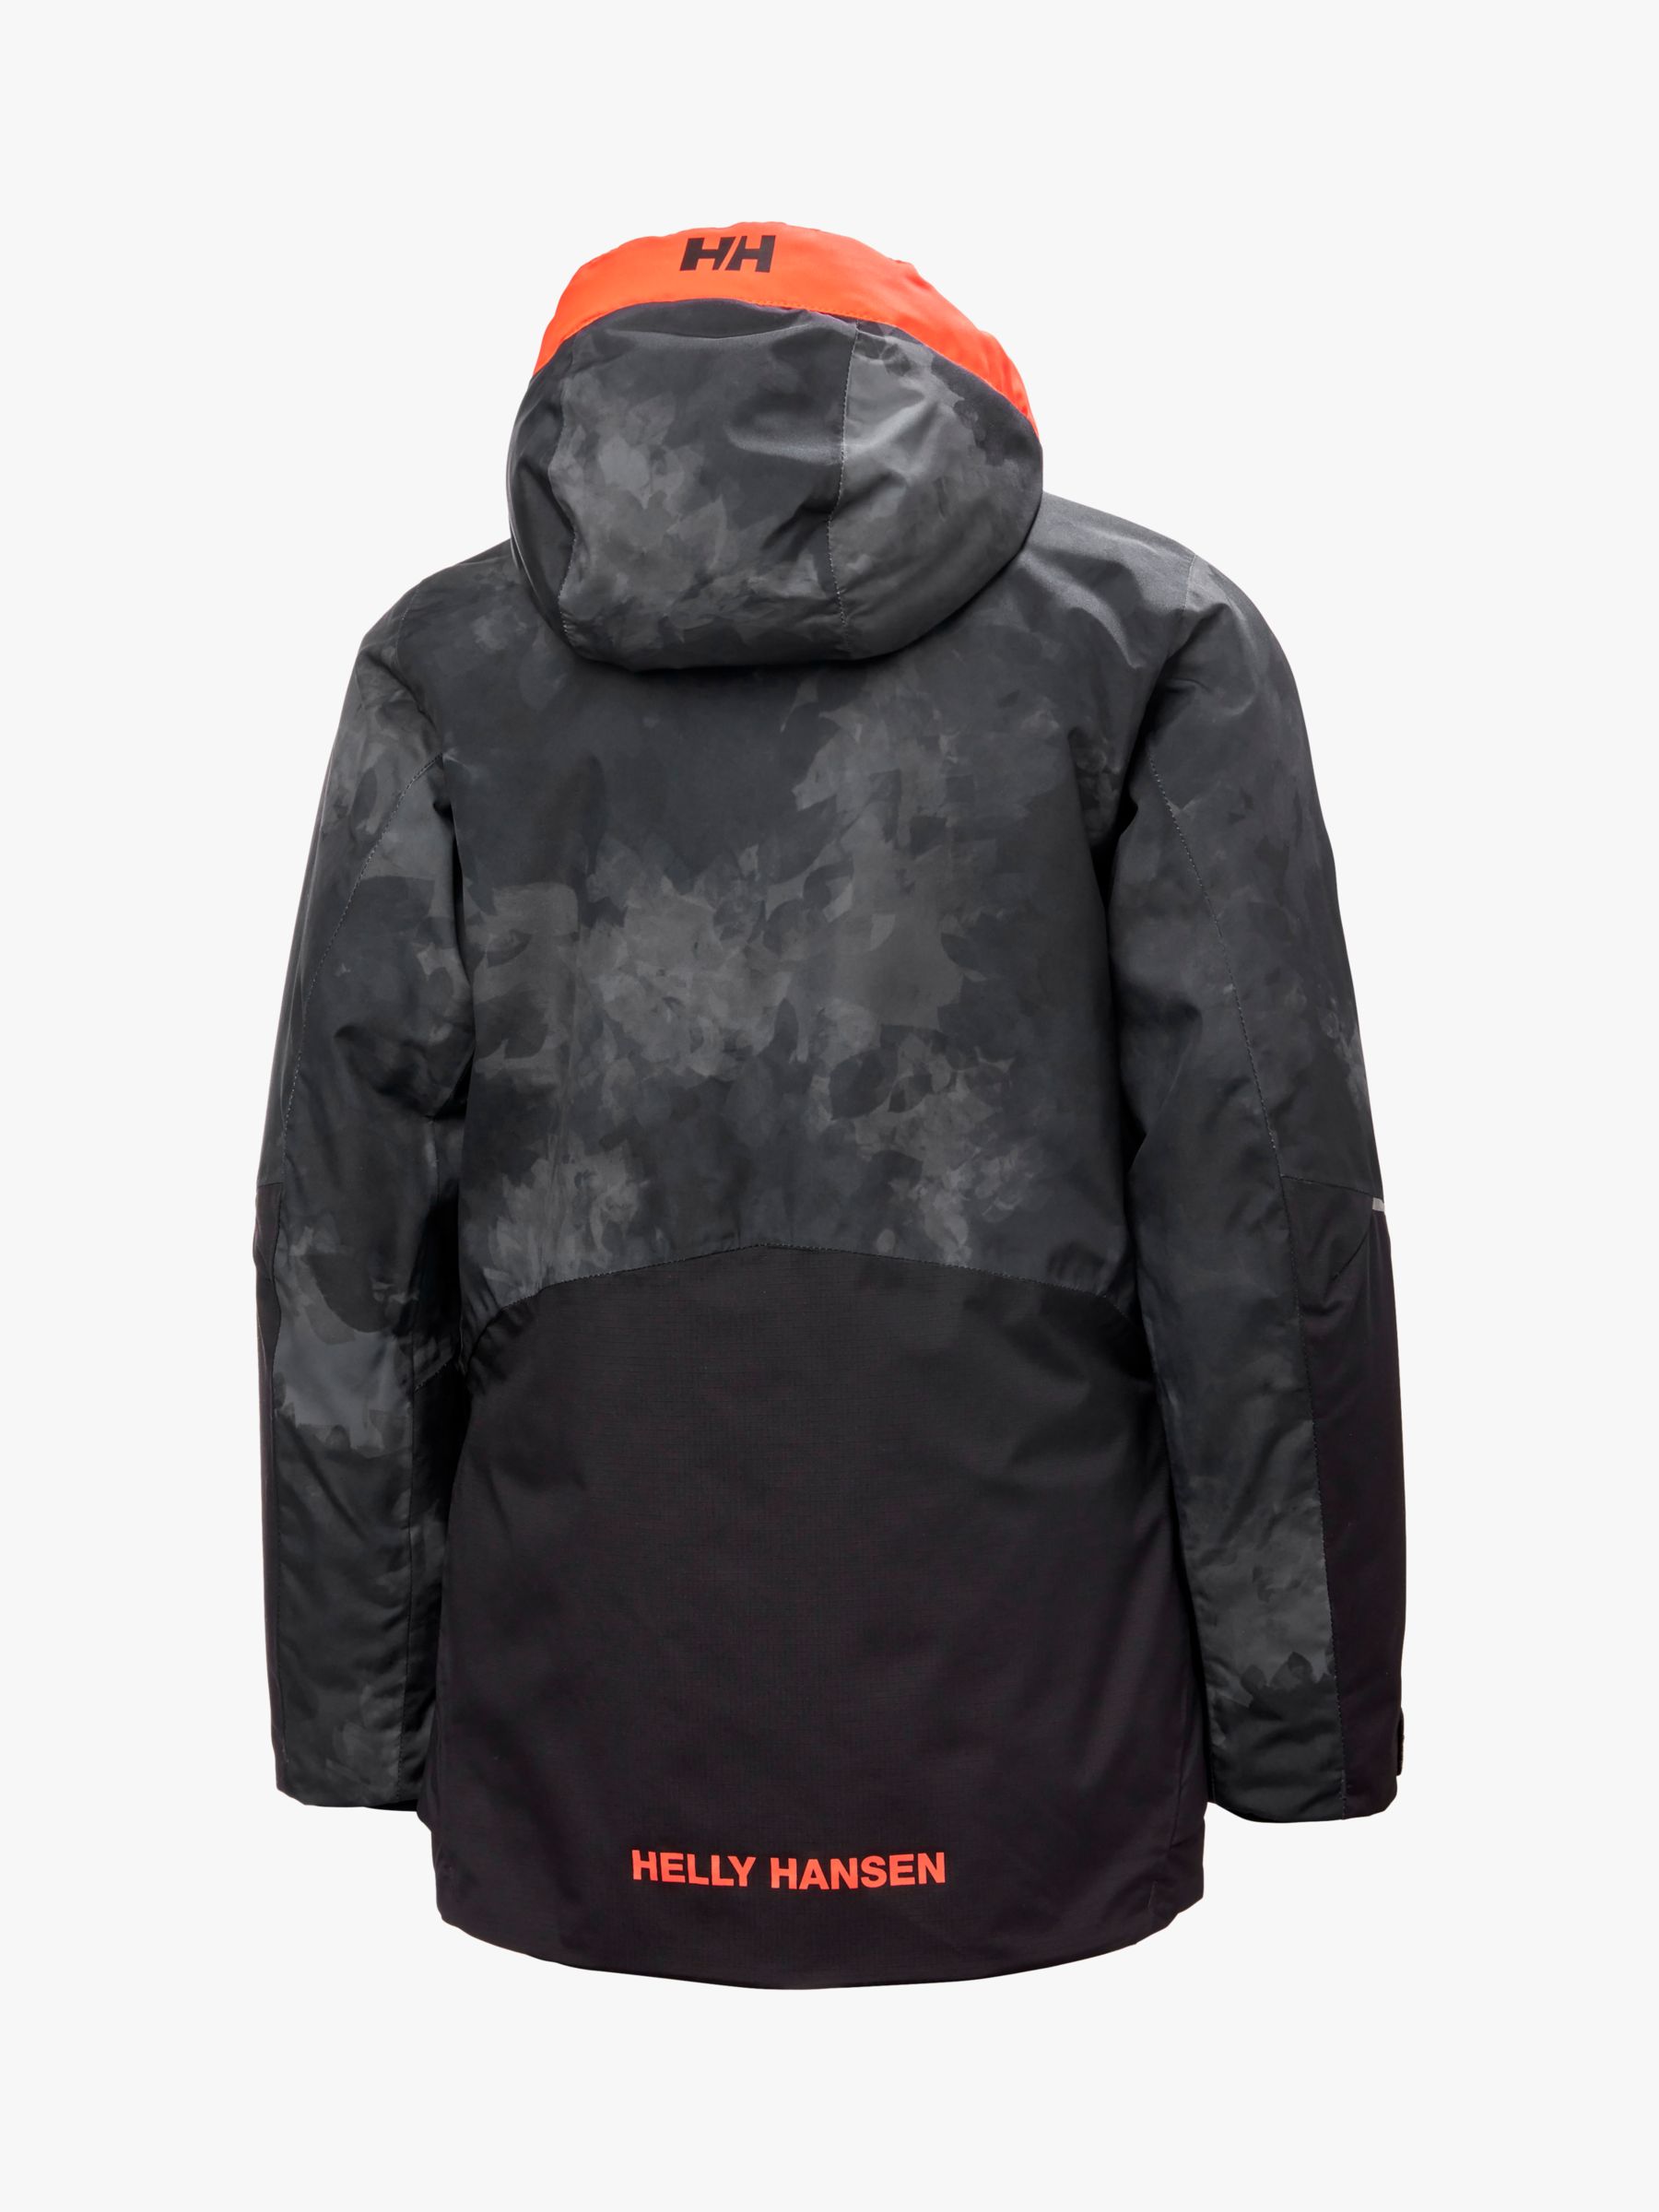 Buy Helly Hansen Kids' Stellar Quest Waterproof Hooded Ski Jacket, Black Online at johnlewis.com